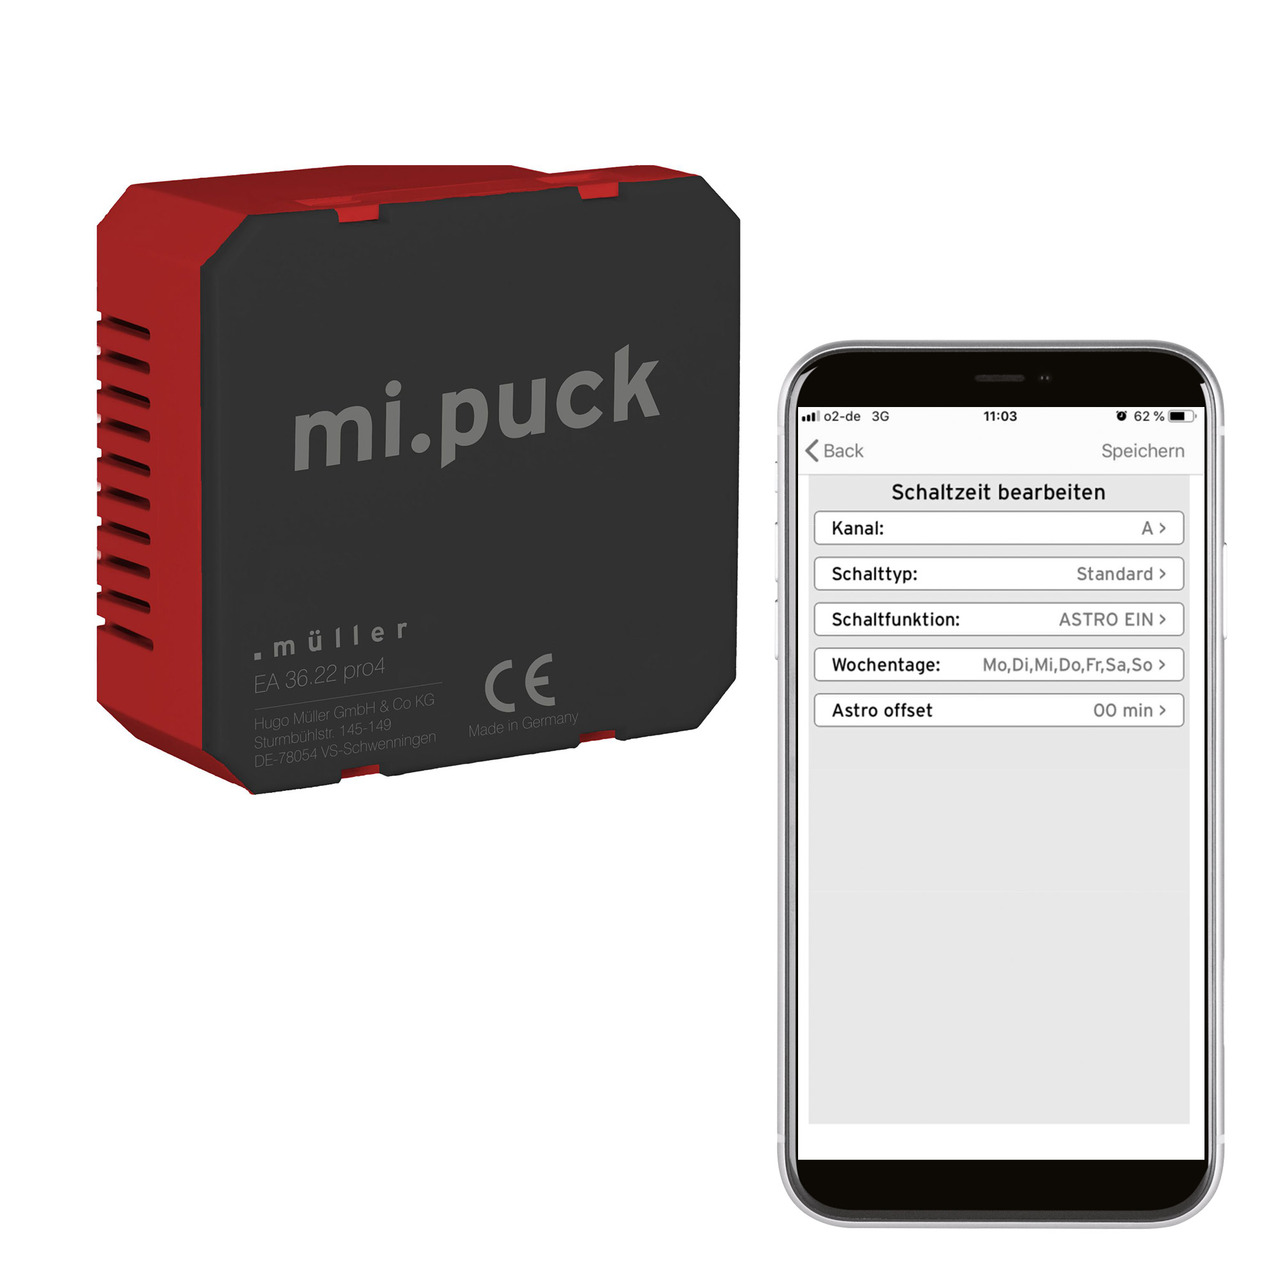 Hugo Mller digitale Wochenuhr EA 36-22 pro4- Rollladensteuerung oder Zeitschaltuhr- Bluetooth